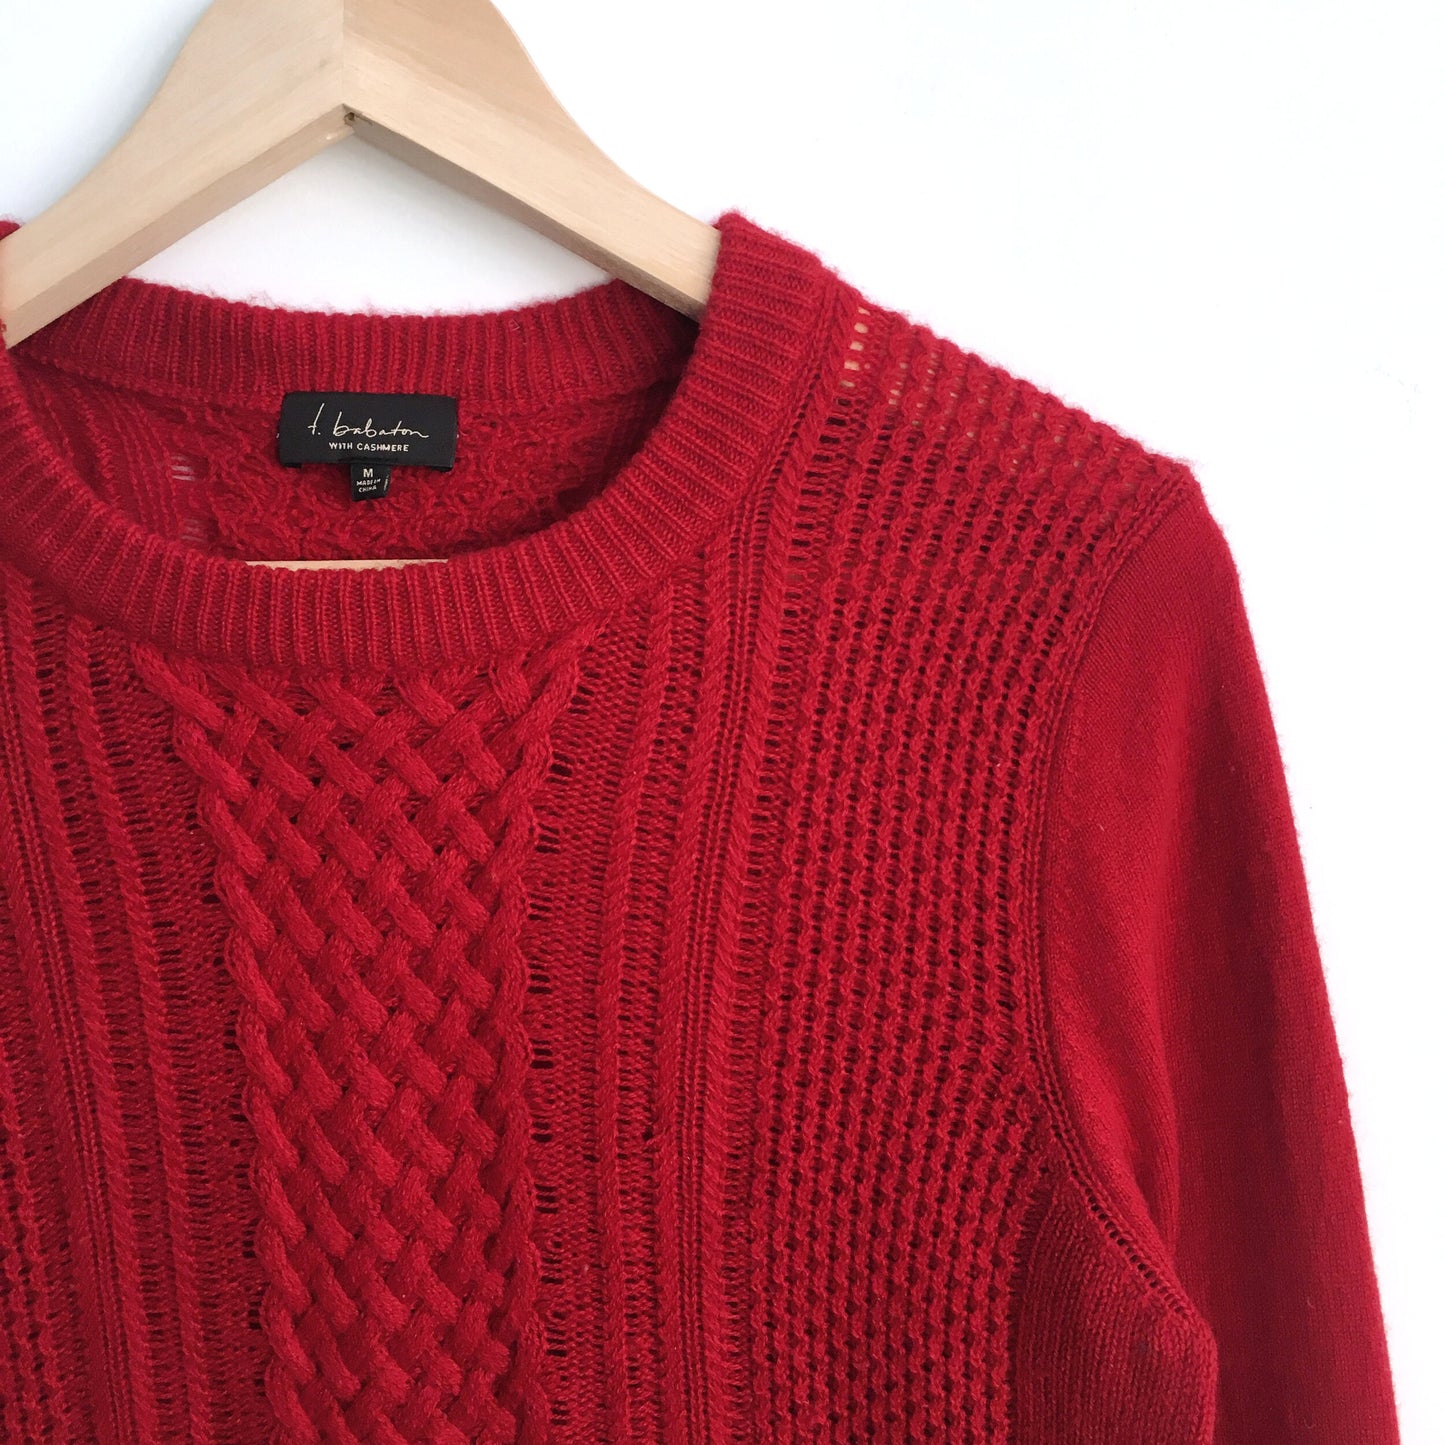 T. Babaton Cashmere Sweater - size Medium